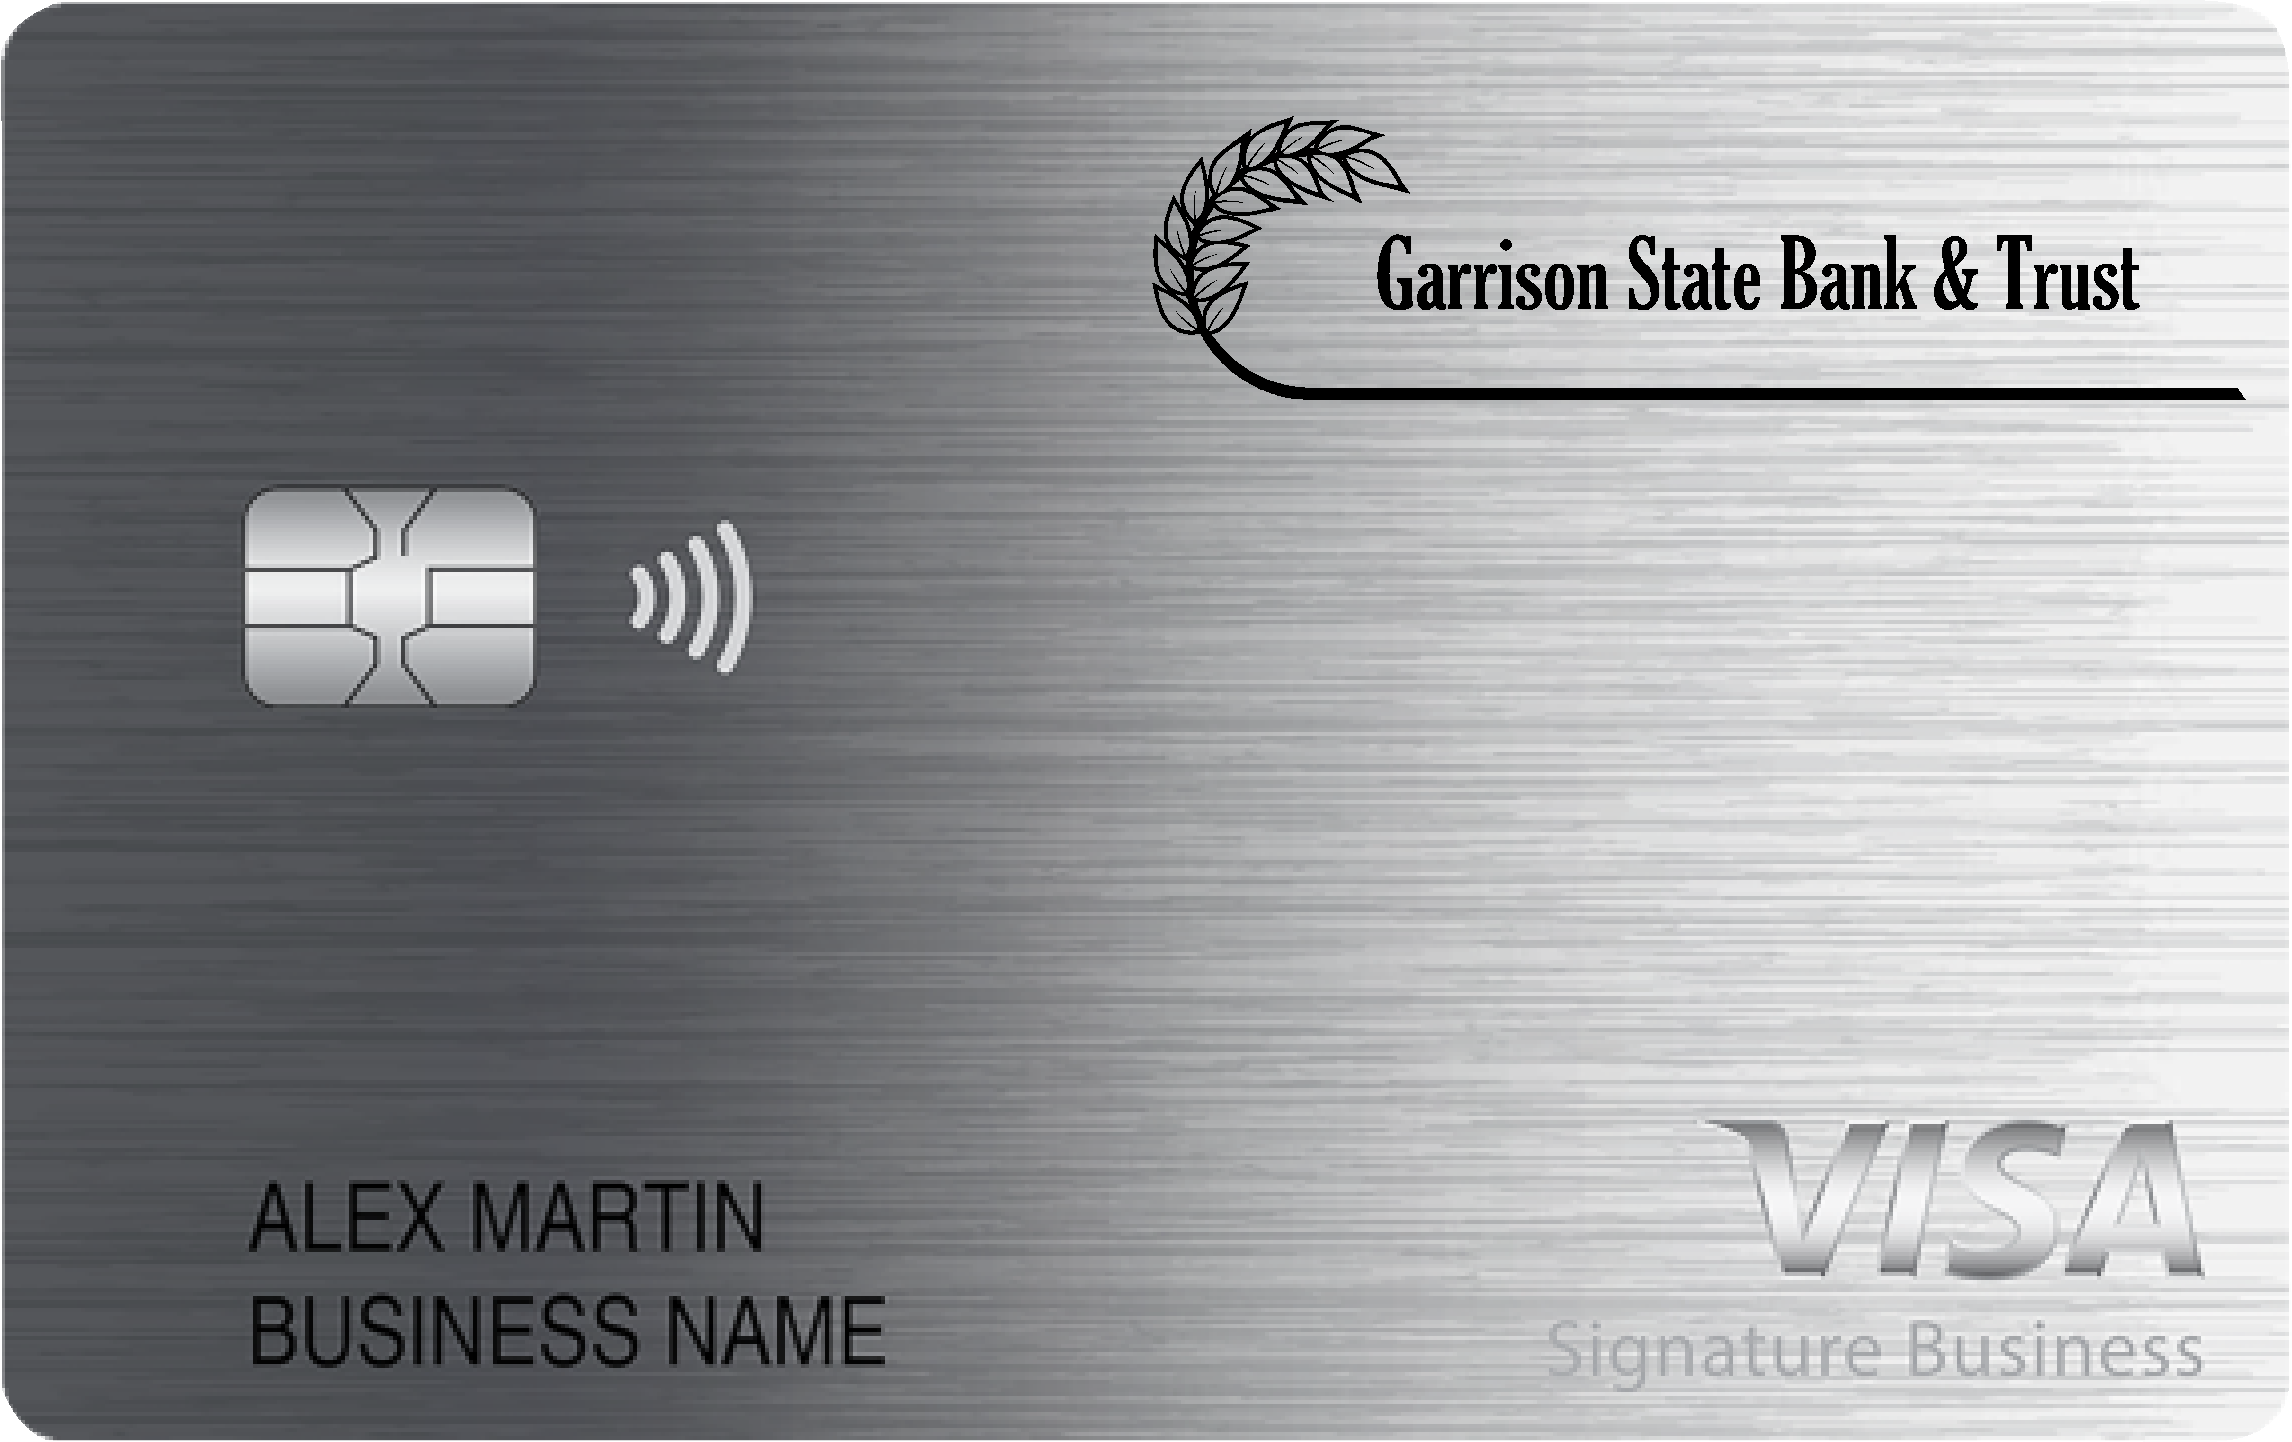 Garrison State Bank & Trust